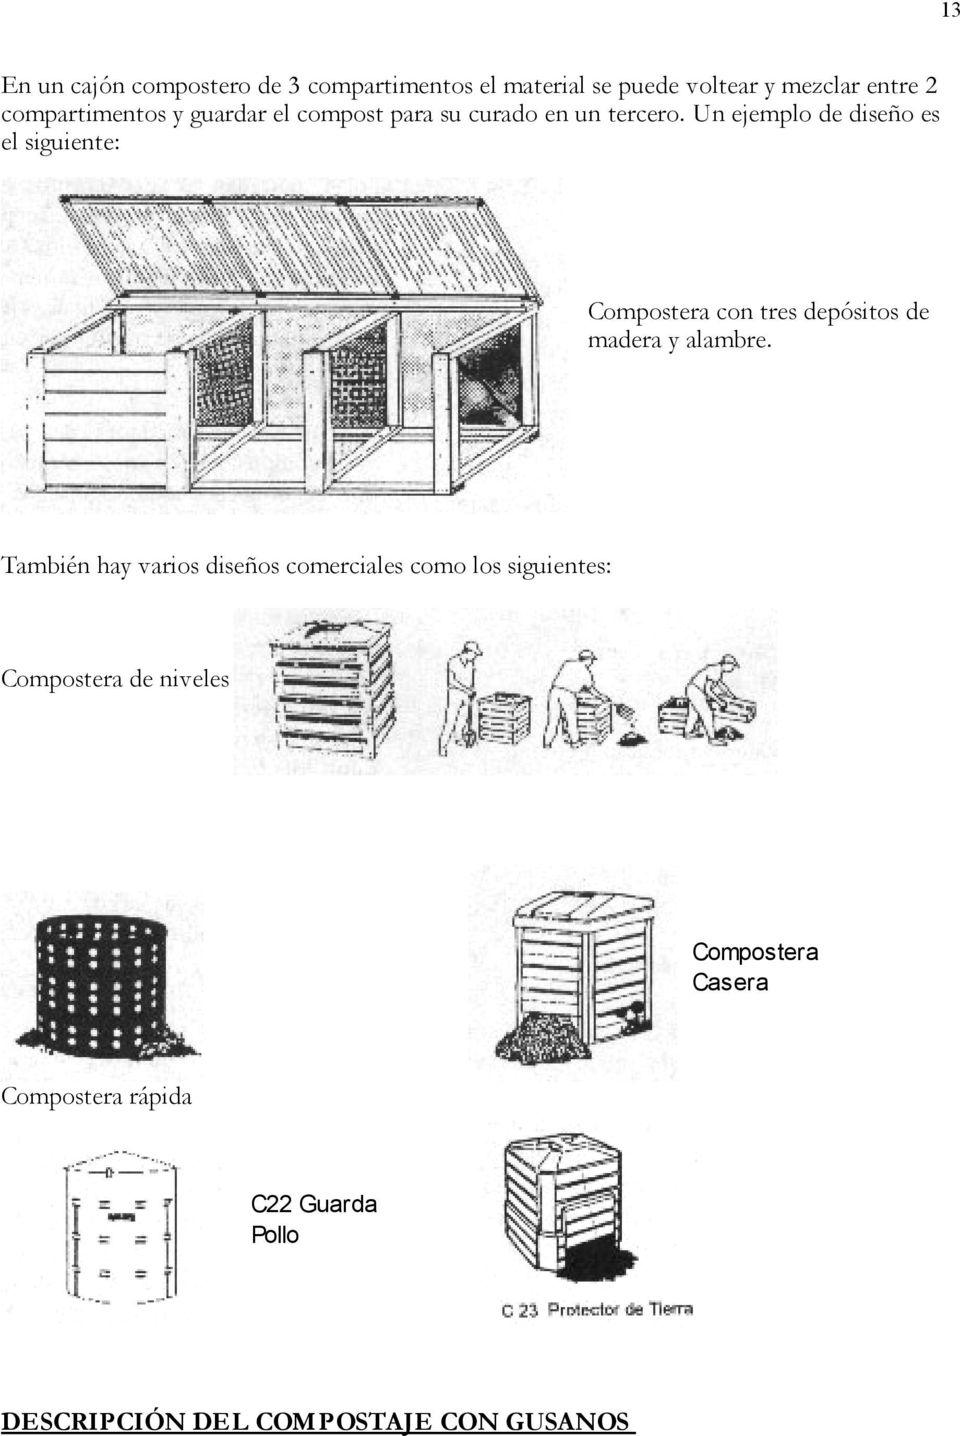 Un ejemplo de diseño es el siguiente: Compostera con tres depósitos de madera y alambre.